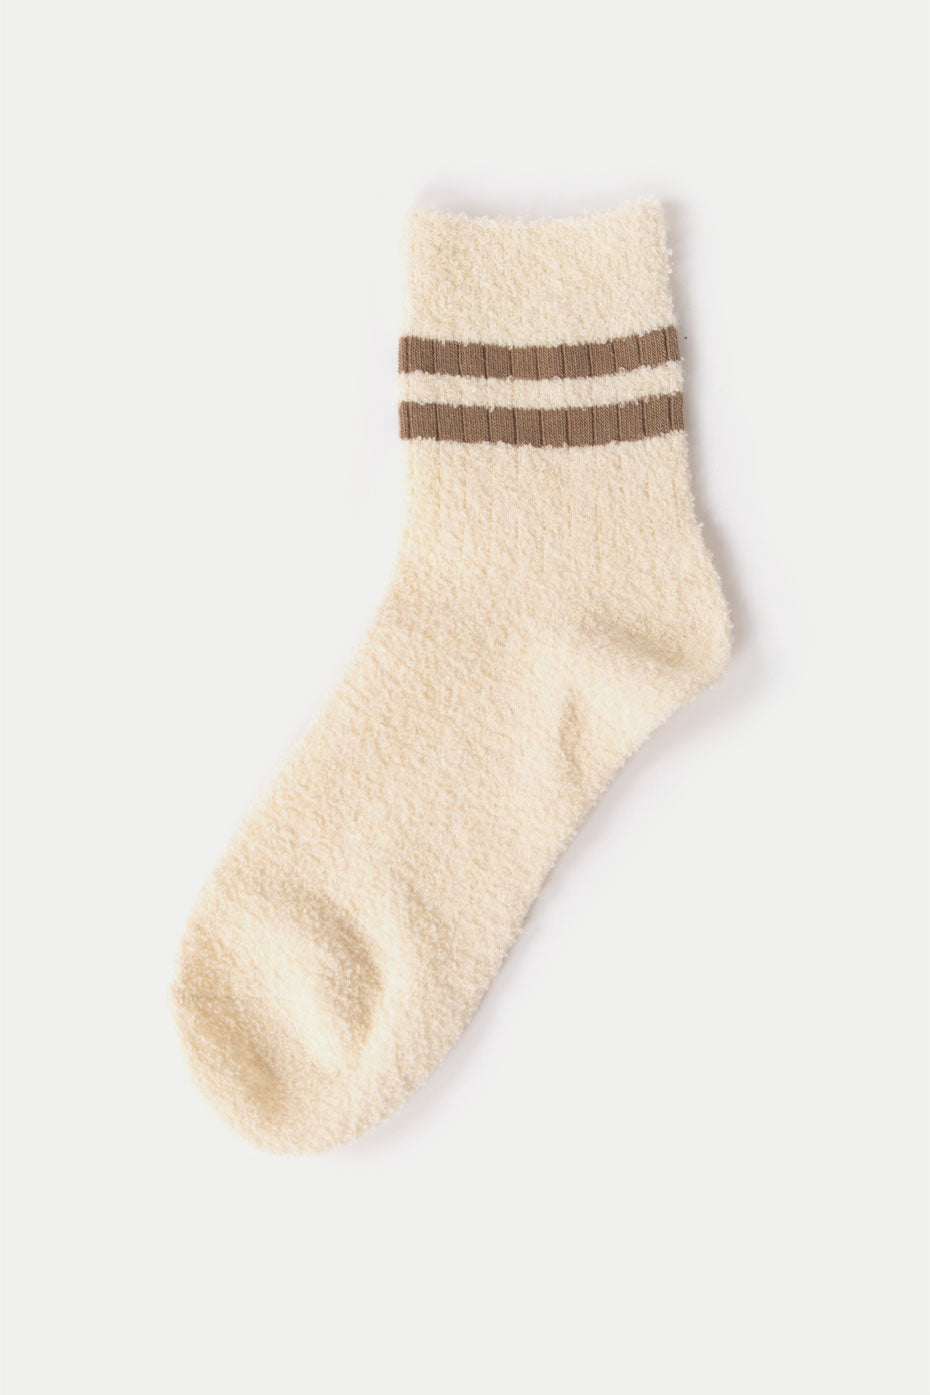 Tabio Ecru Wool Terry Yarn Socks